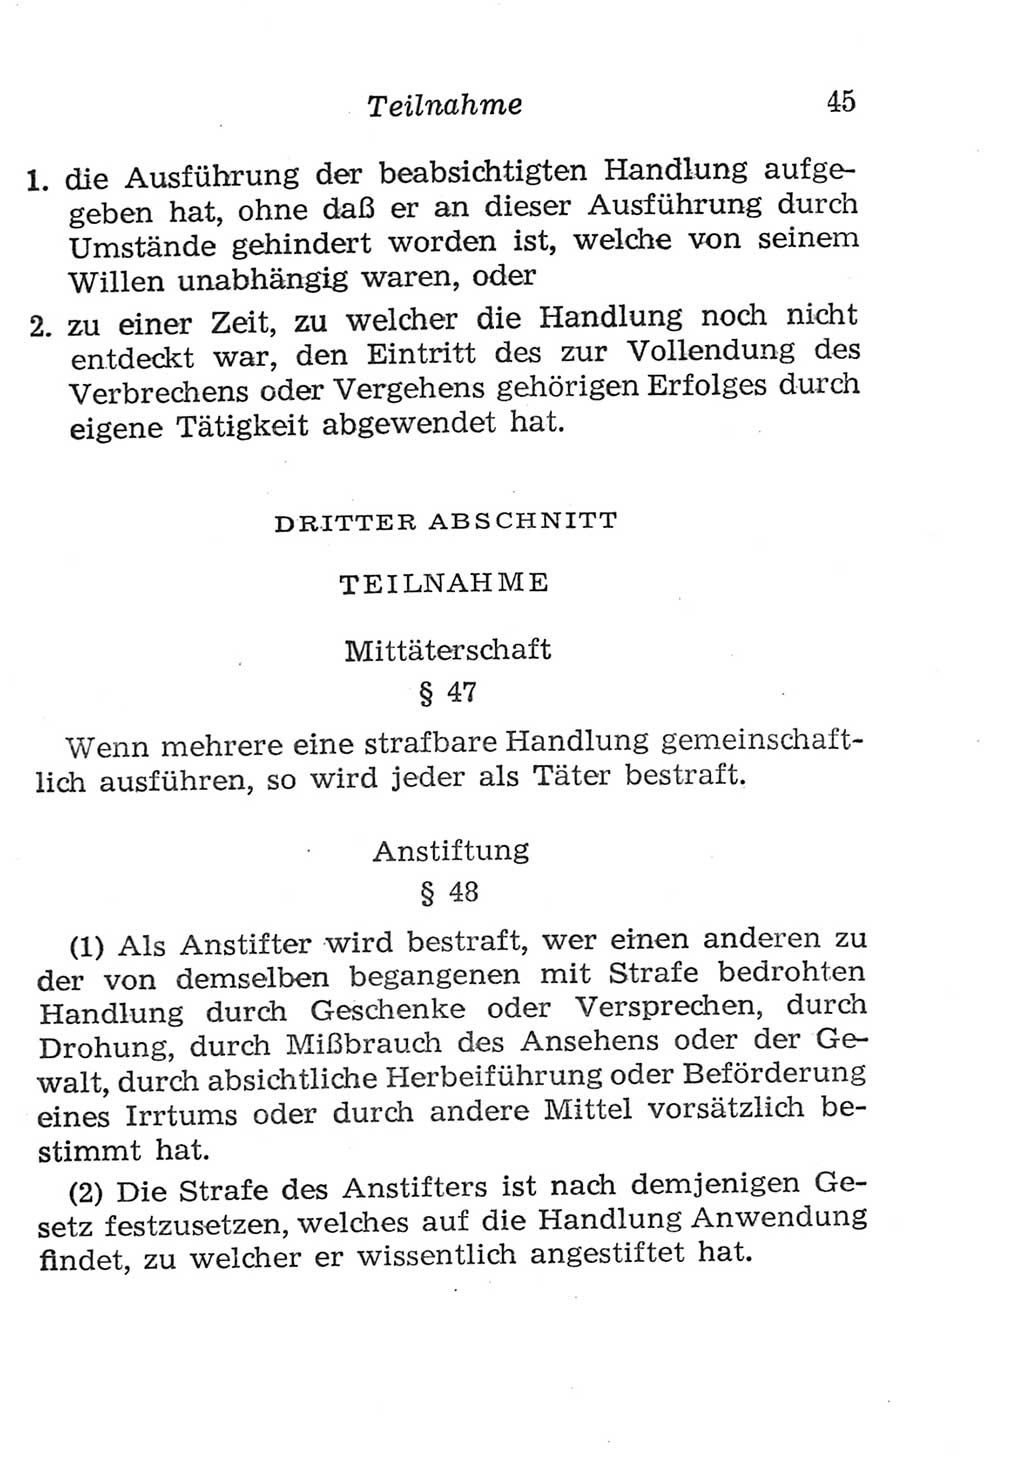 Strafgesetzbuch (StGB) und andere Strafgesetze [Deutsche Demokratische Republik (DDR)] 1957, Seite 45 (StGB Strafges. DDR 1957, S. 45)